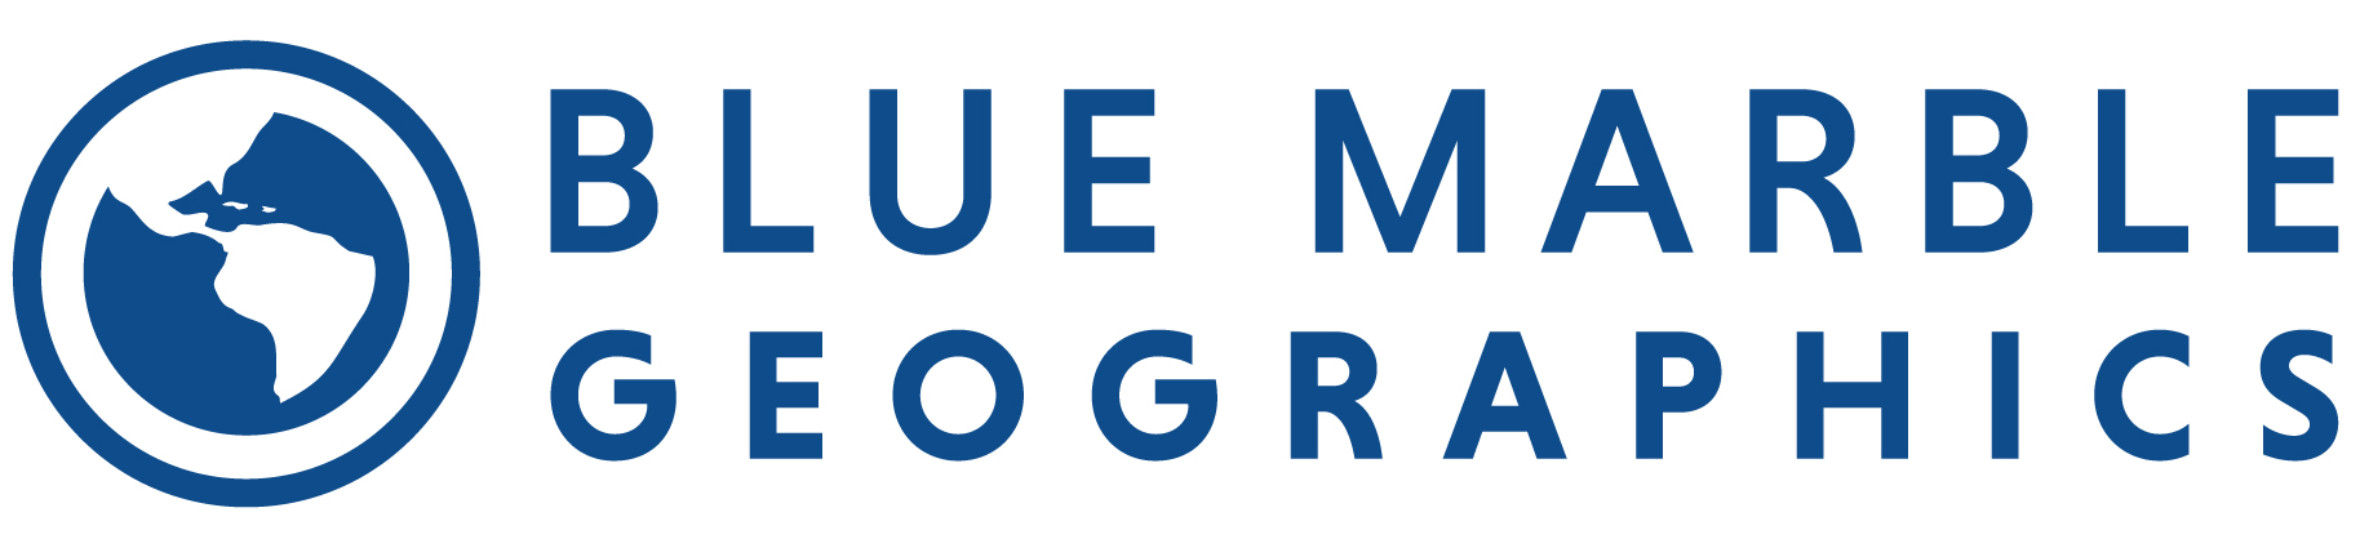 bmg-logo-2020-1829x424.jpg